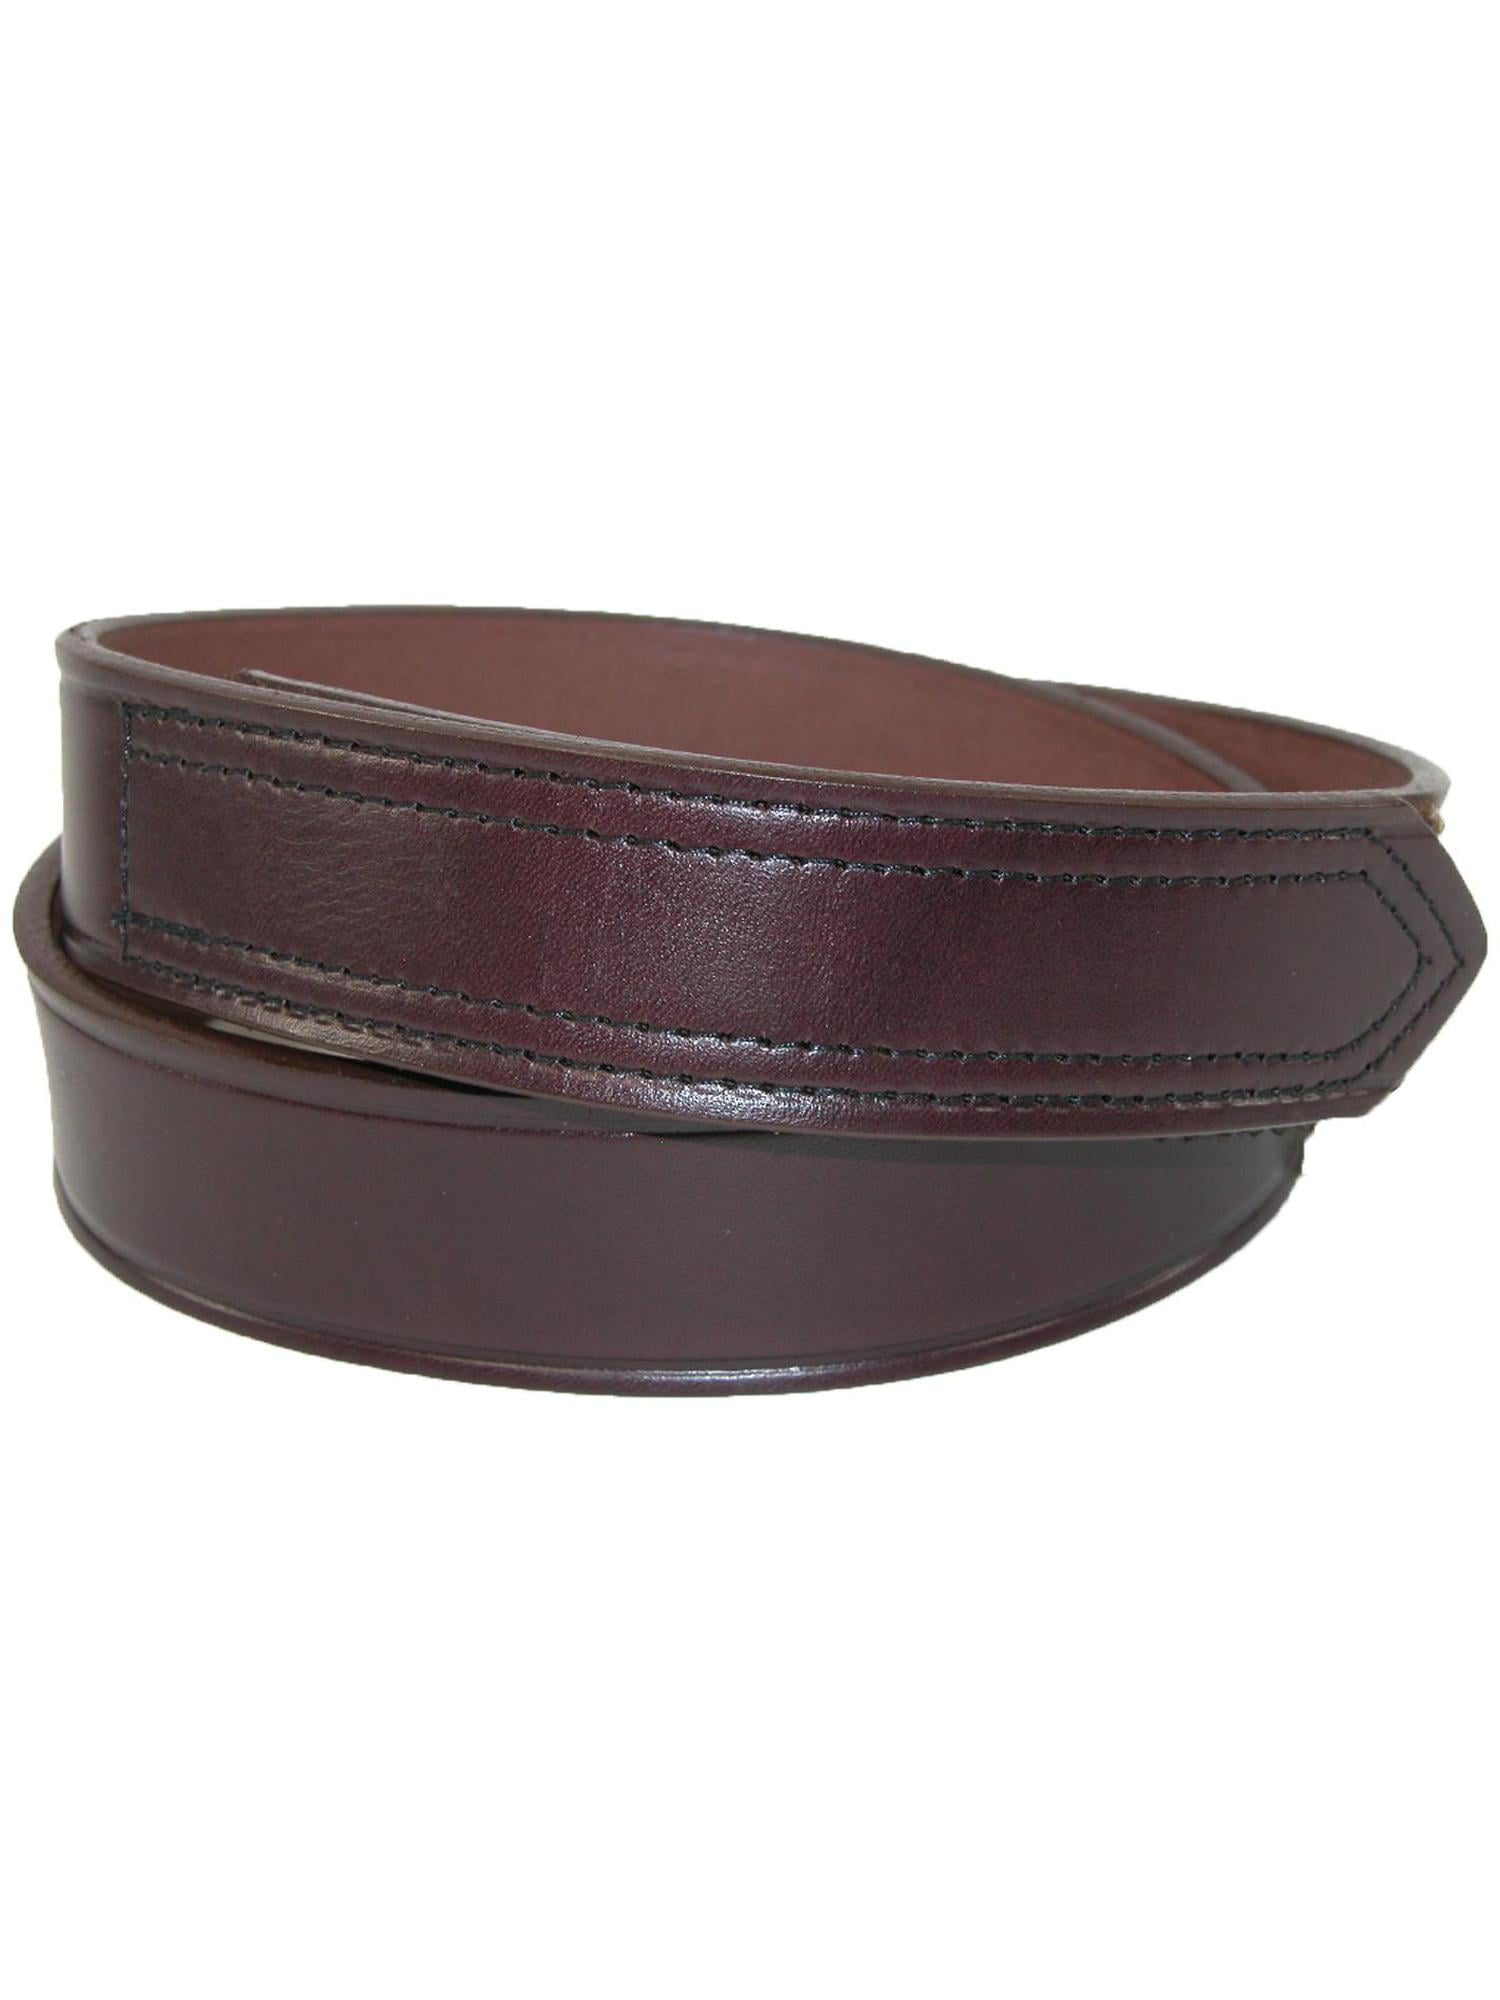 Men's Leather 1 3/8 inch Hook and Loop No Scratch Work Belt - Walmart.com